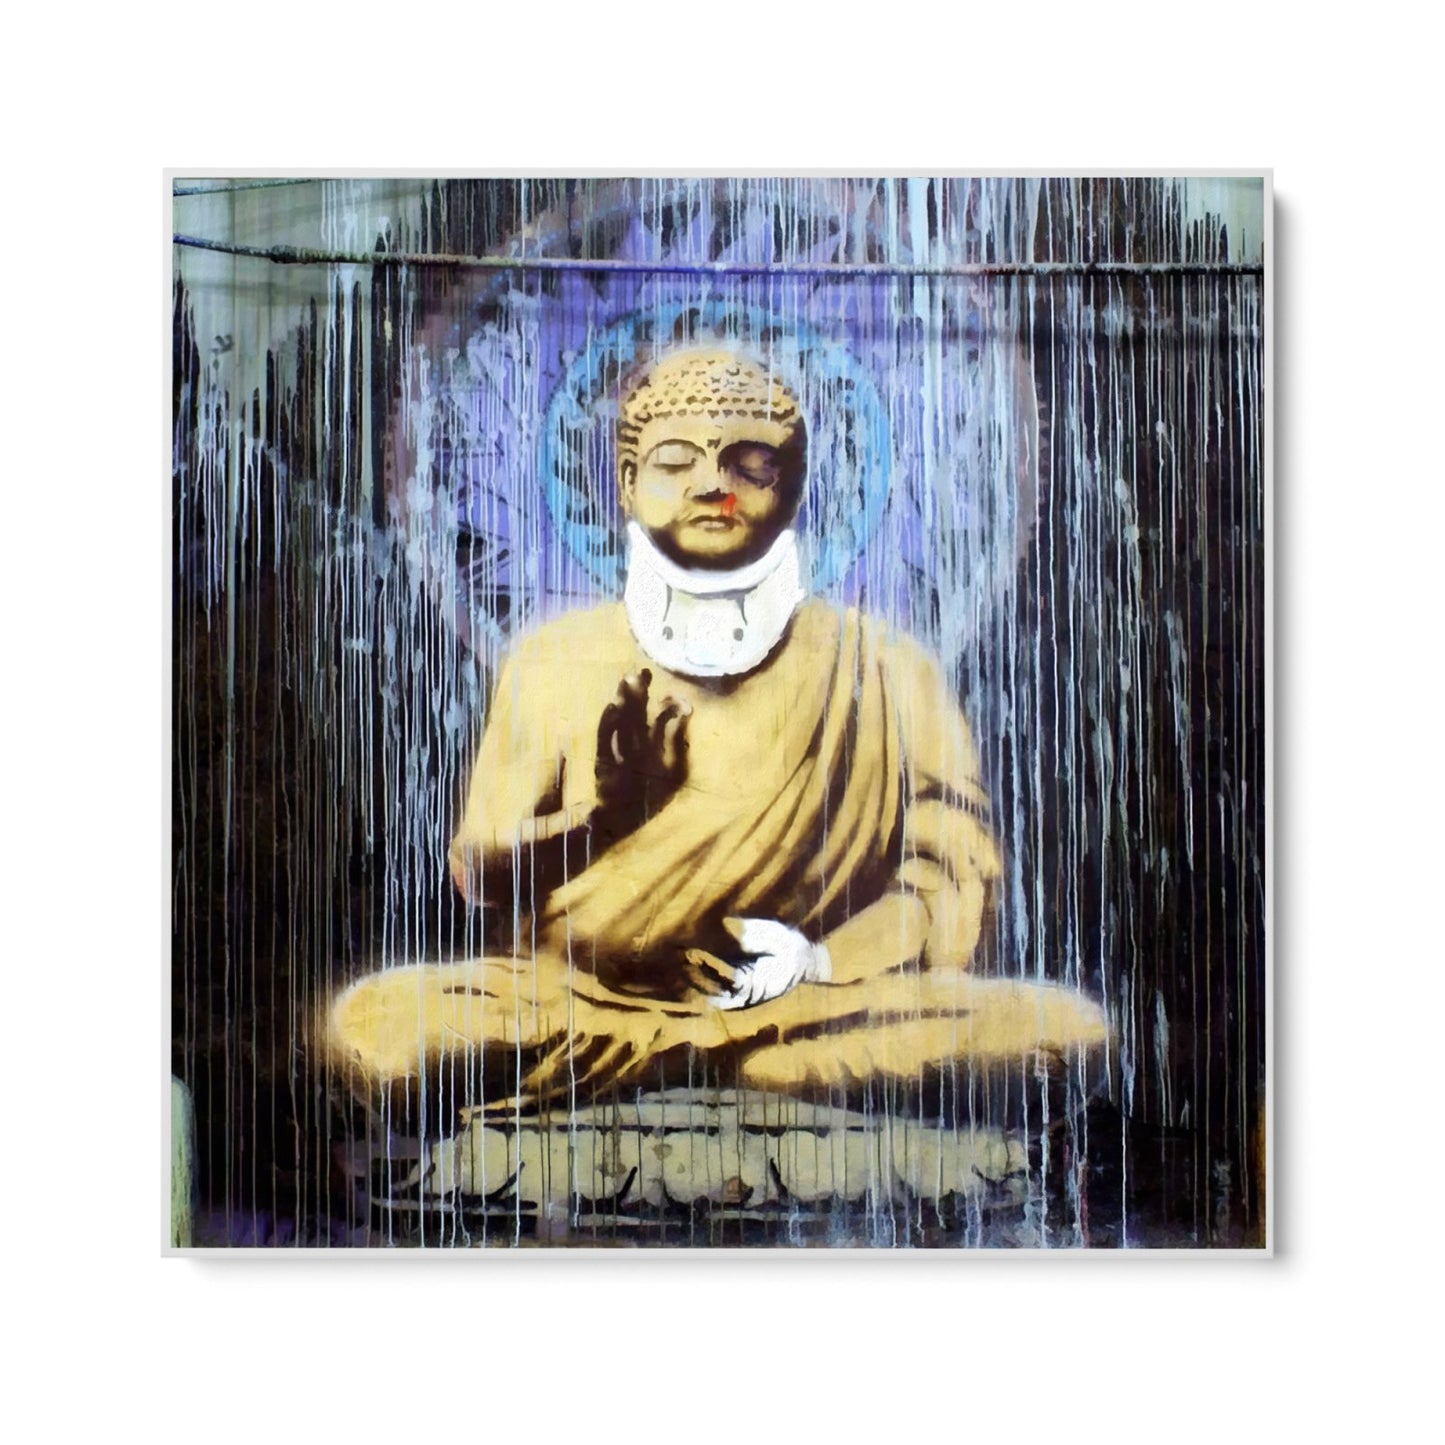 Bouddha blessé, Banksy